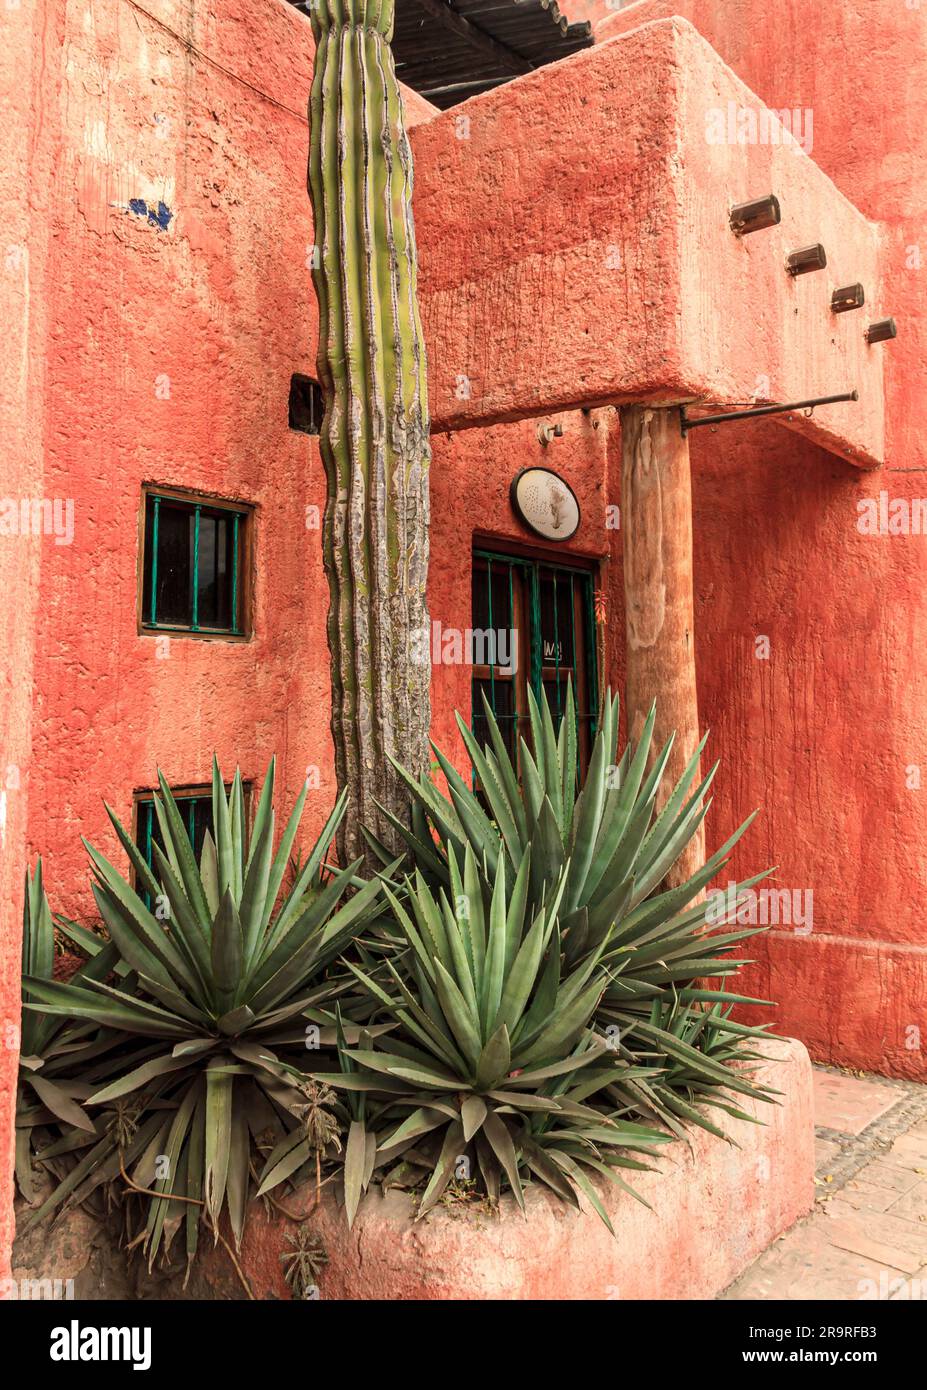 Typisches Gebäude im Adobe-Stil in Lareto, Mexiko, mit Kaktus- und Aloe-Vera-Pflanzen. Stockfoto